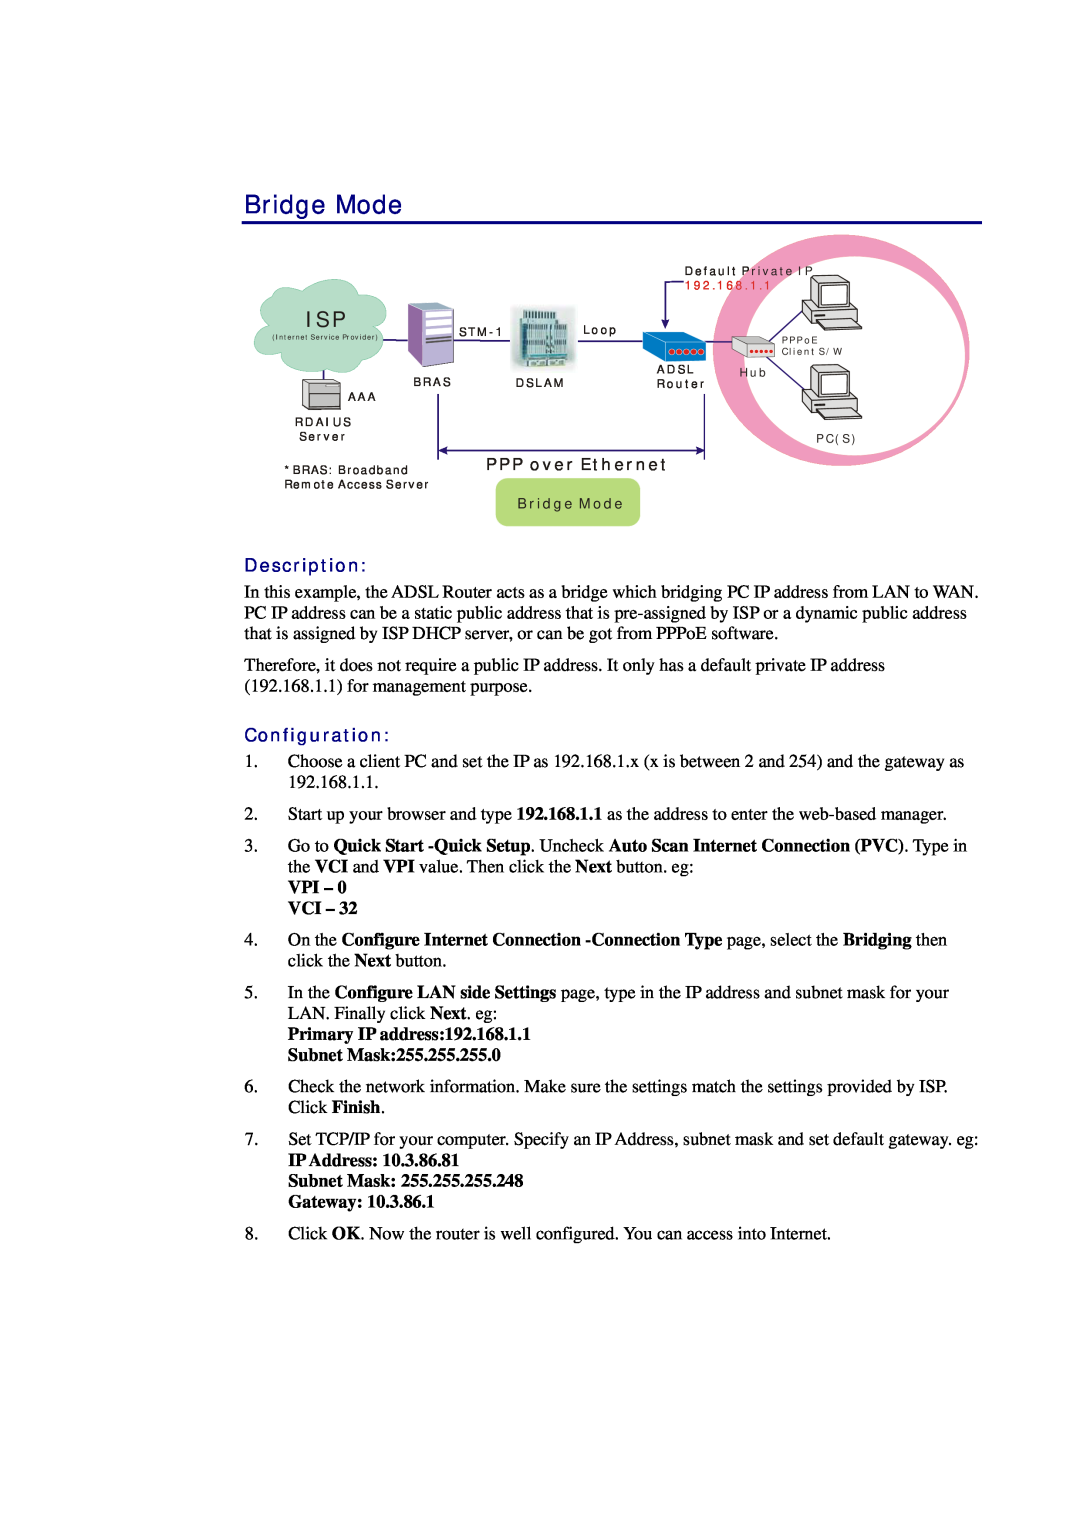 Siemens CL-010-I manual Bridge Mode, Description, Configuration, VPI - 0 VCI, IP Address Subnet Mask Gateway 